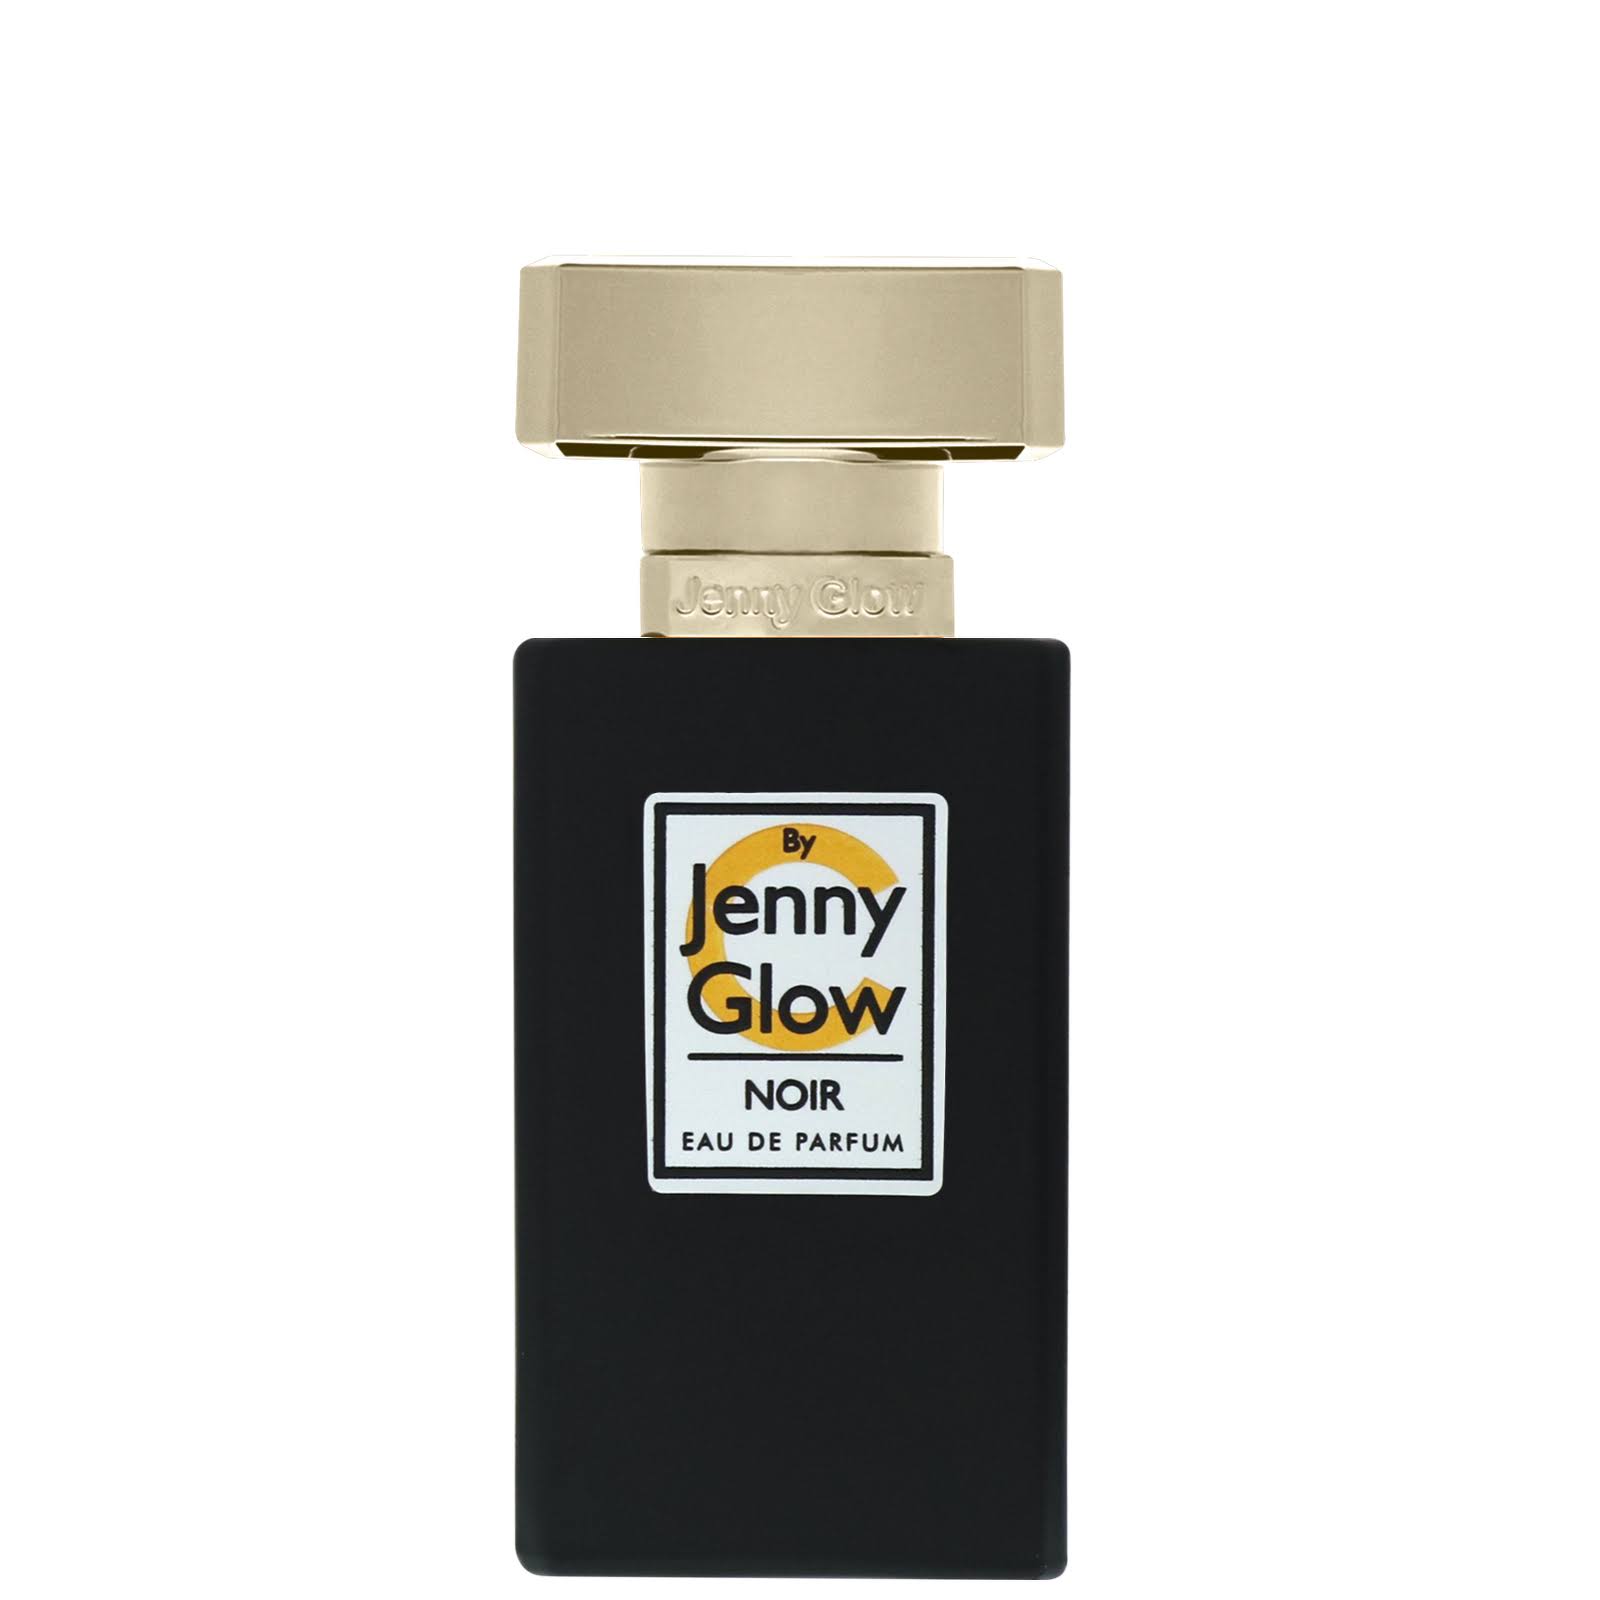 Jenny Glow - Noir 30ml Eau de Parfum Spray for Women